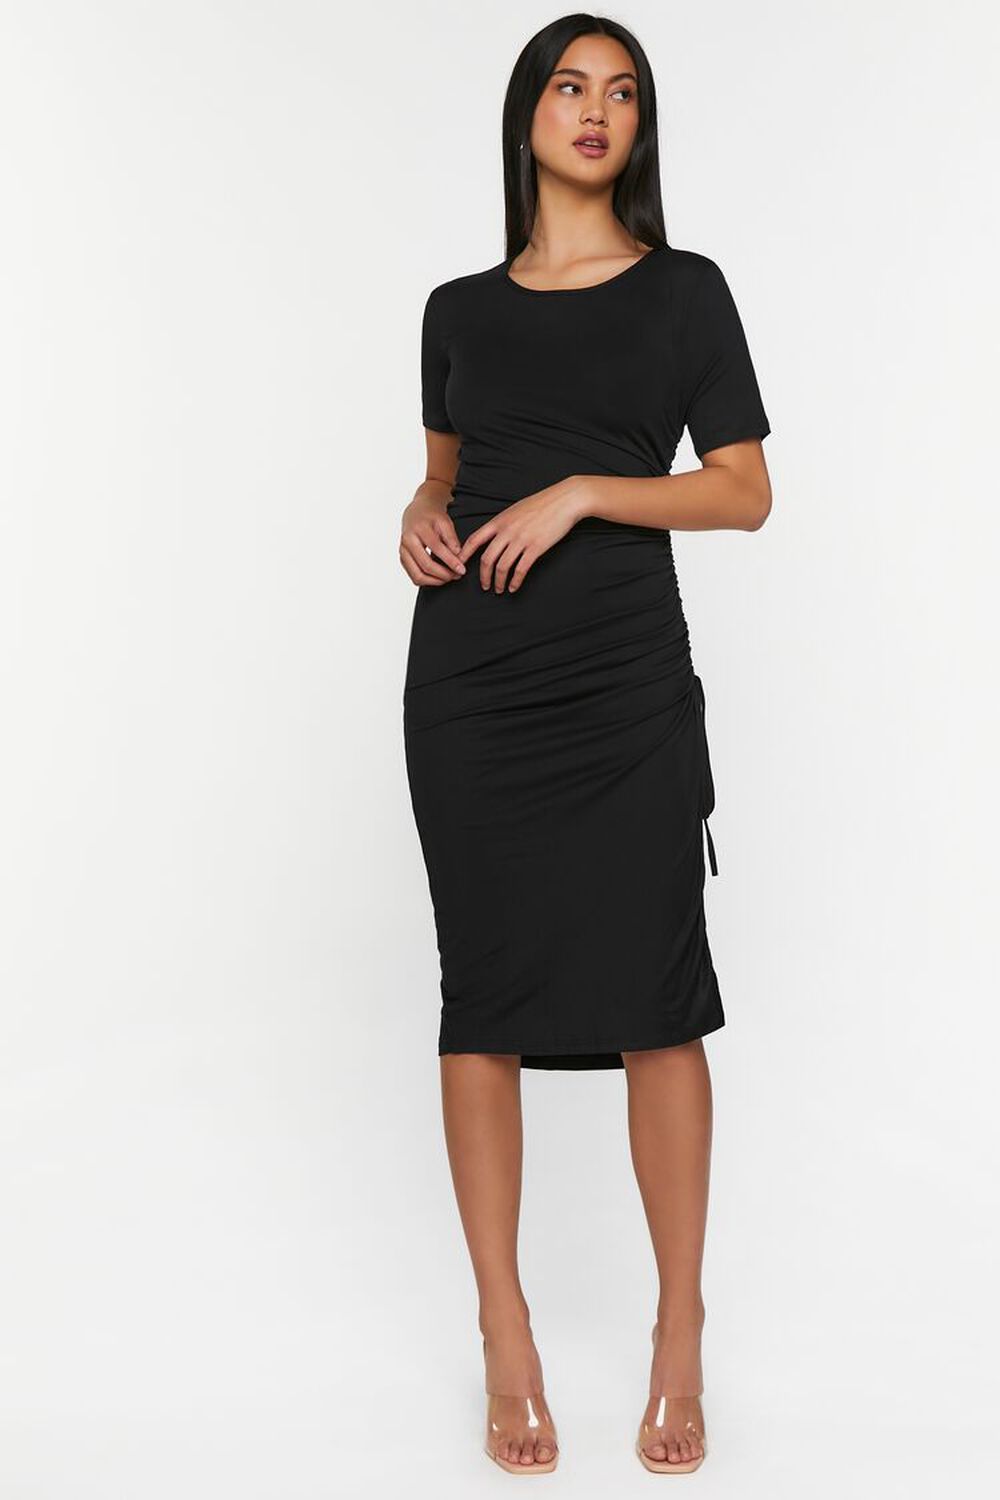 BLACK Ruched Short-Sleeve Midi Dress, image 1